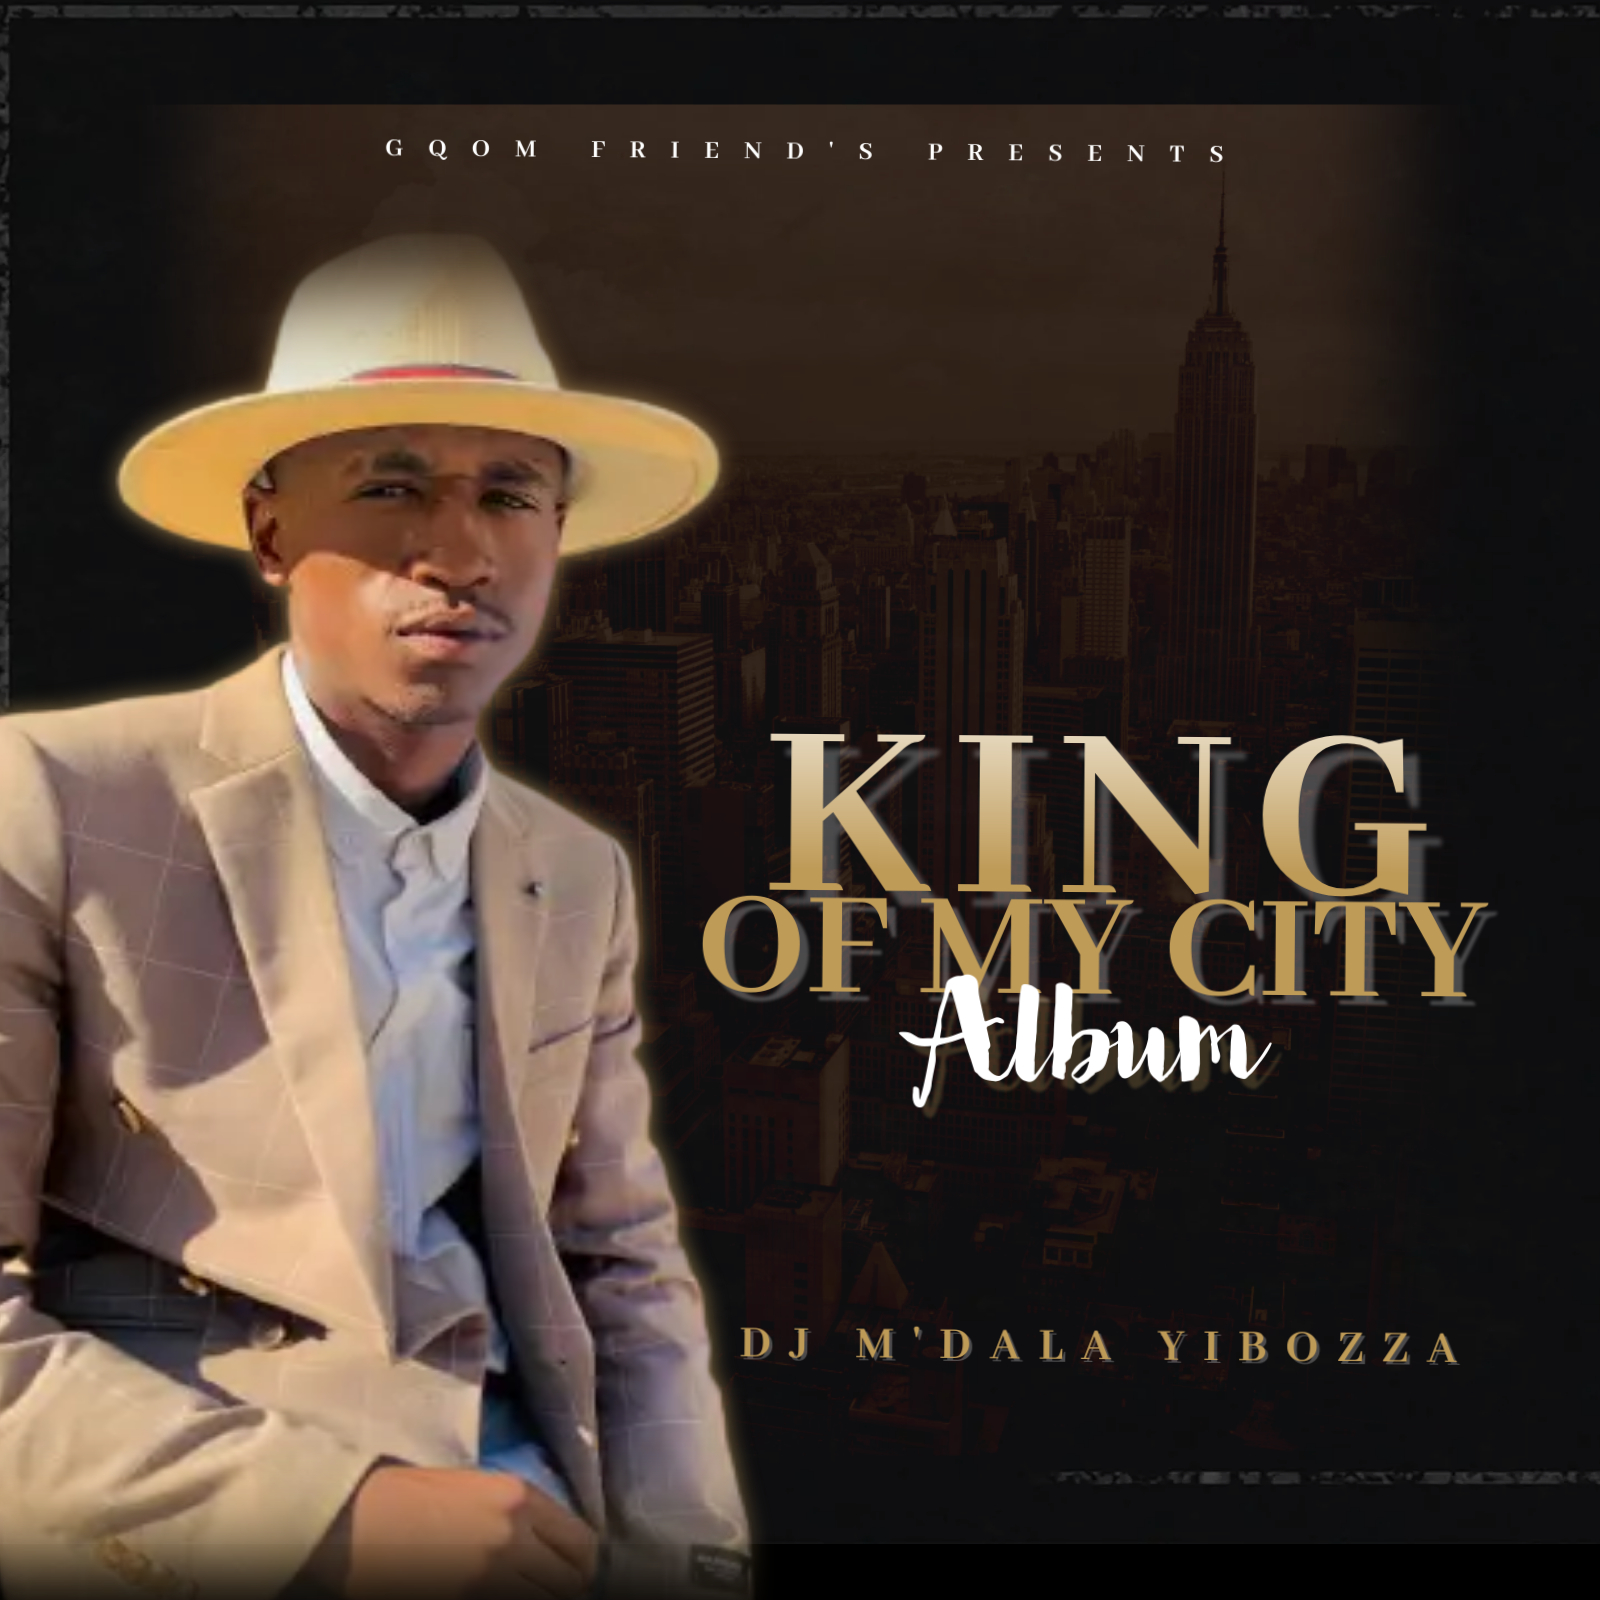 King of my City Album - Dj M'DALA YIBOZZA